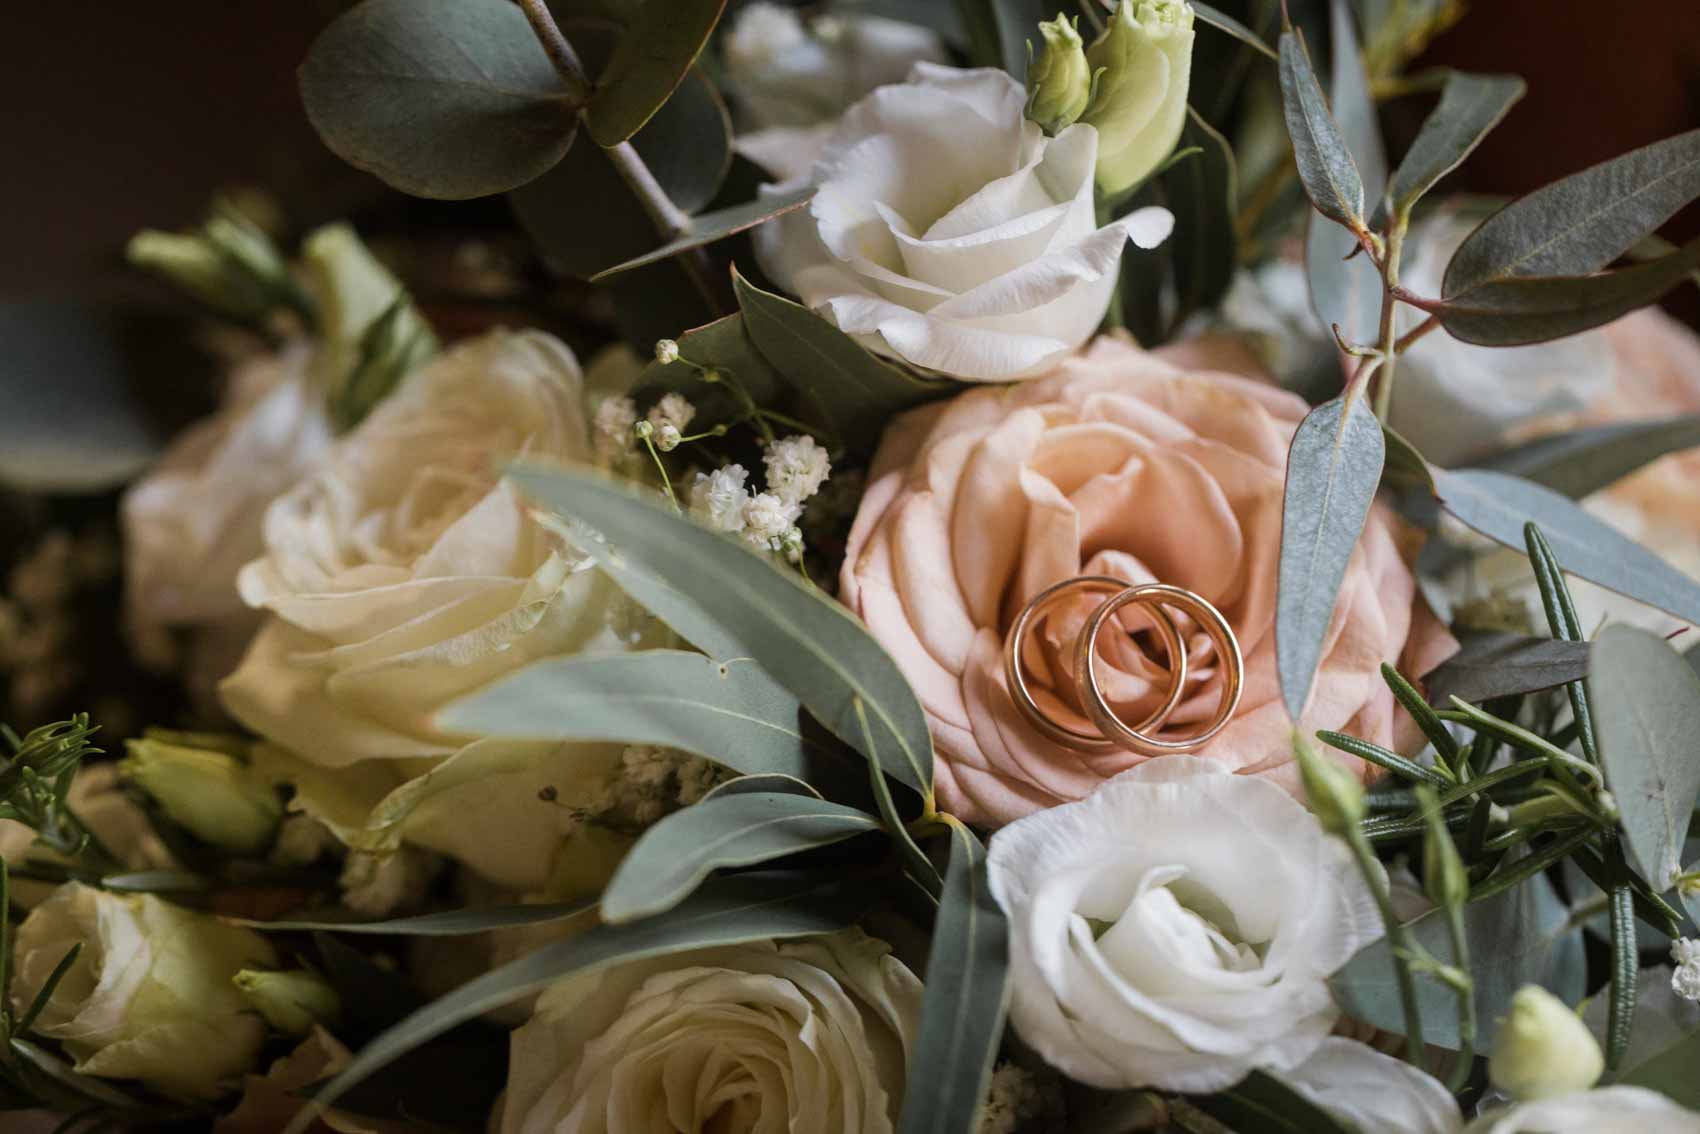 Trauringe auf einer pfirsichfarbenen Rose im Brautstrauß